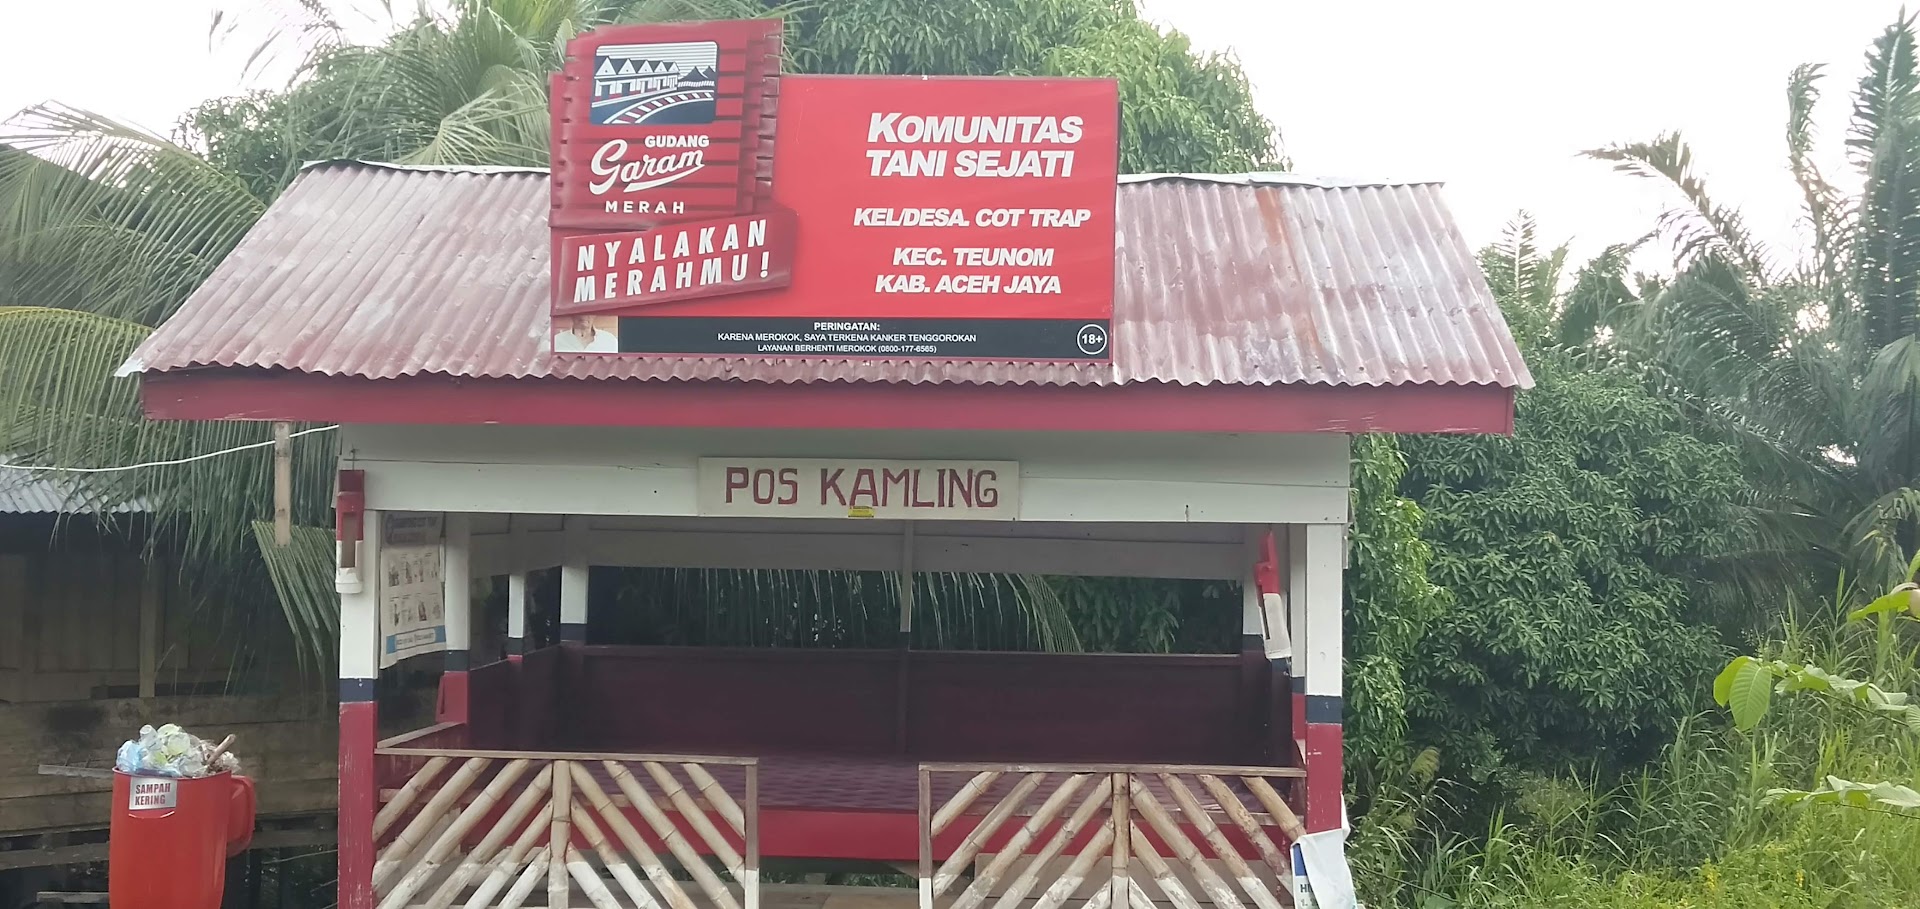 Pos Kamling Gampong Cot Trap Photo